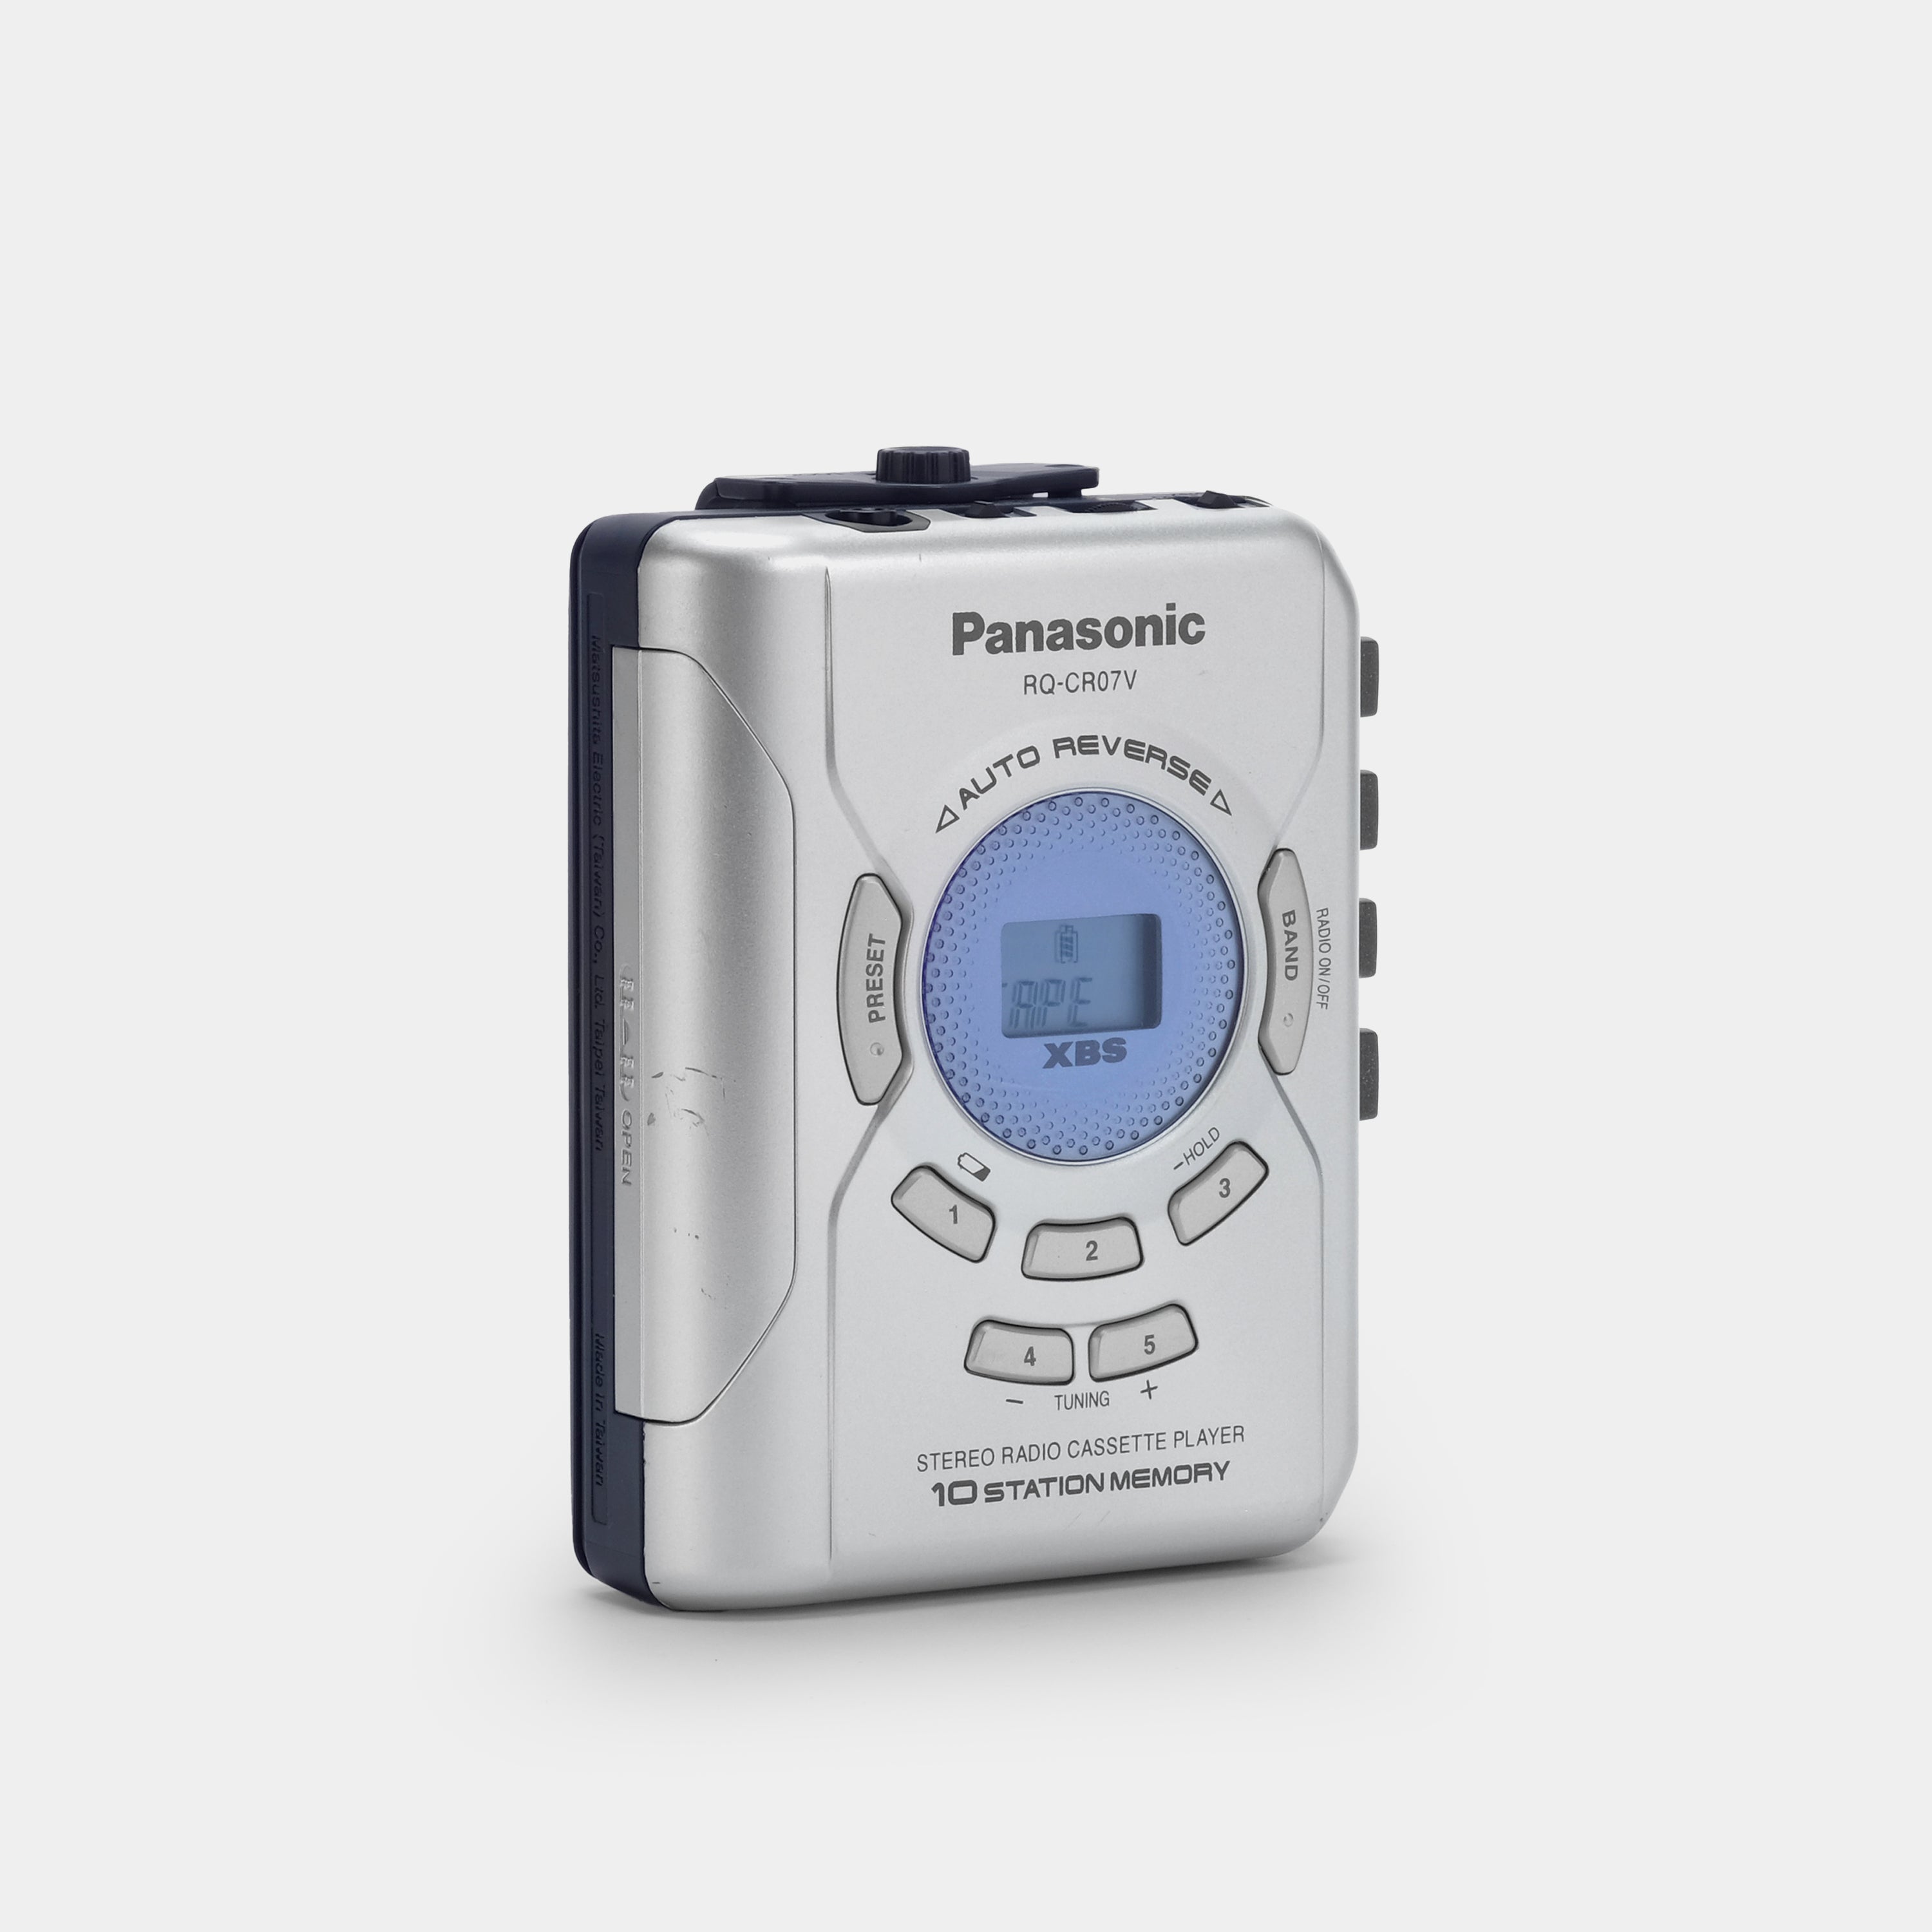 Panasonic RQ-CR07V Portable Stereo Cassette Player